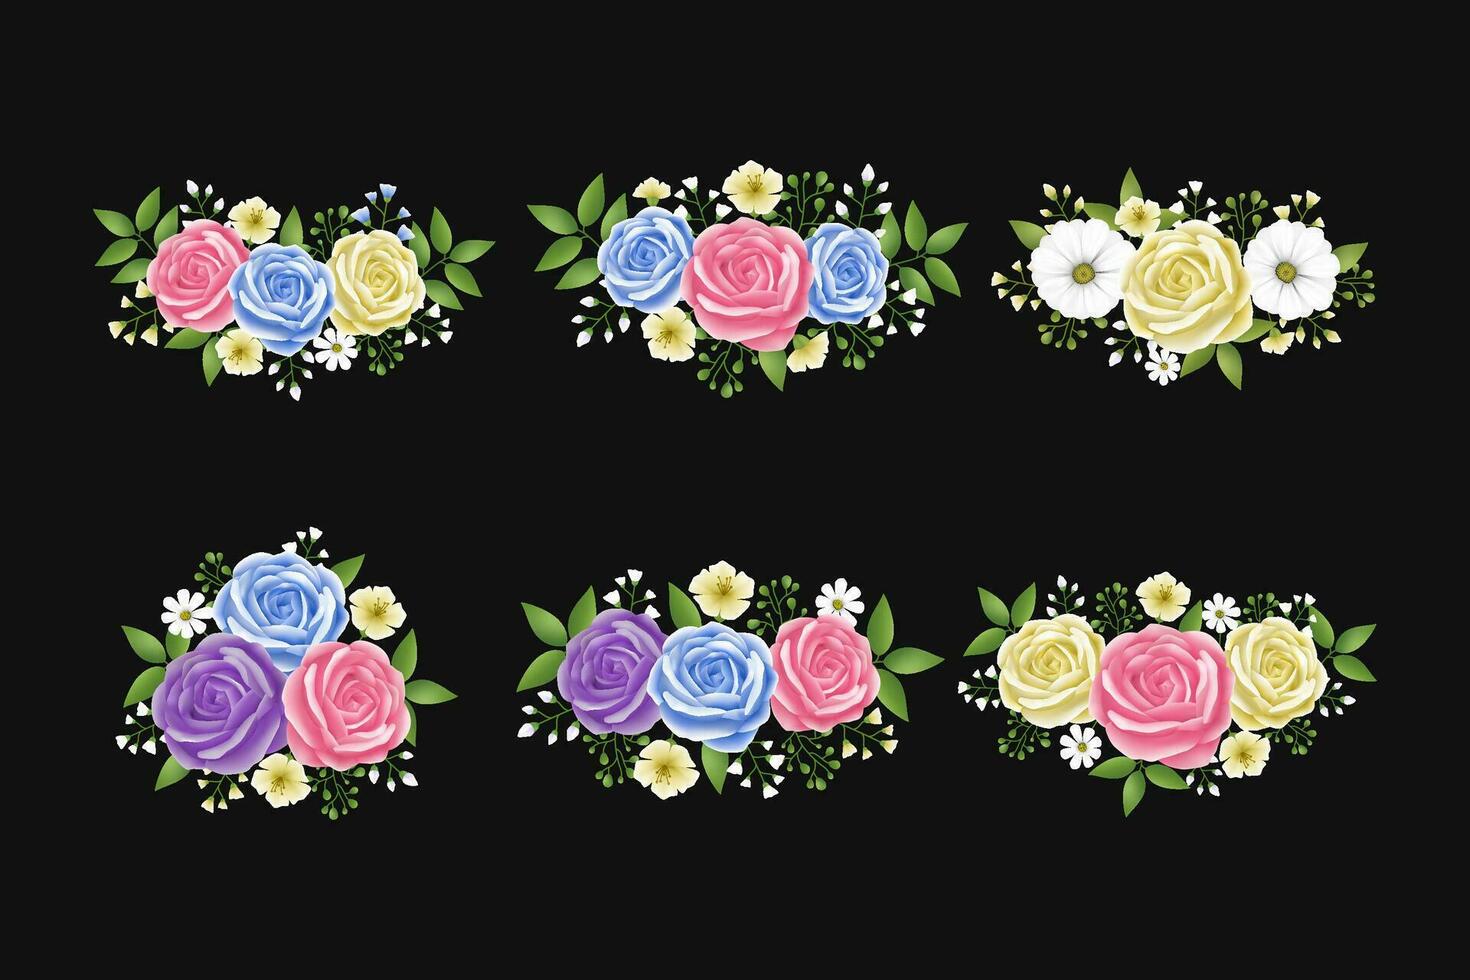 Rose fiori le foglie ghirlanda con ciano, beige, rosa e viola colore impostare. floreale mano disegnato per mazzi di fiori, ghirlande, disposizioni, nozze inviti, anniversario vettore